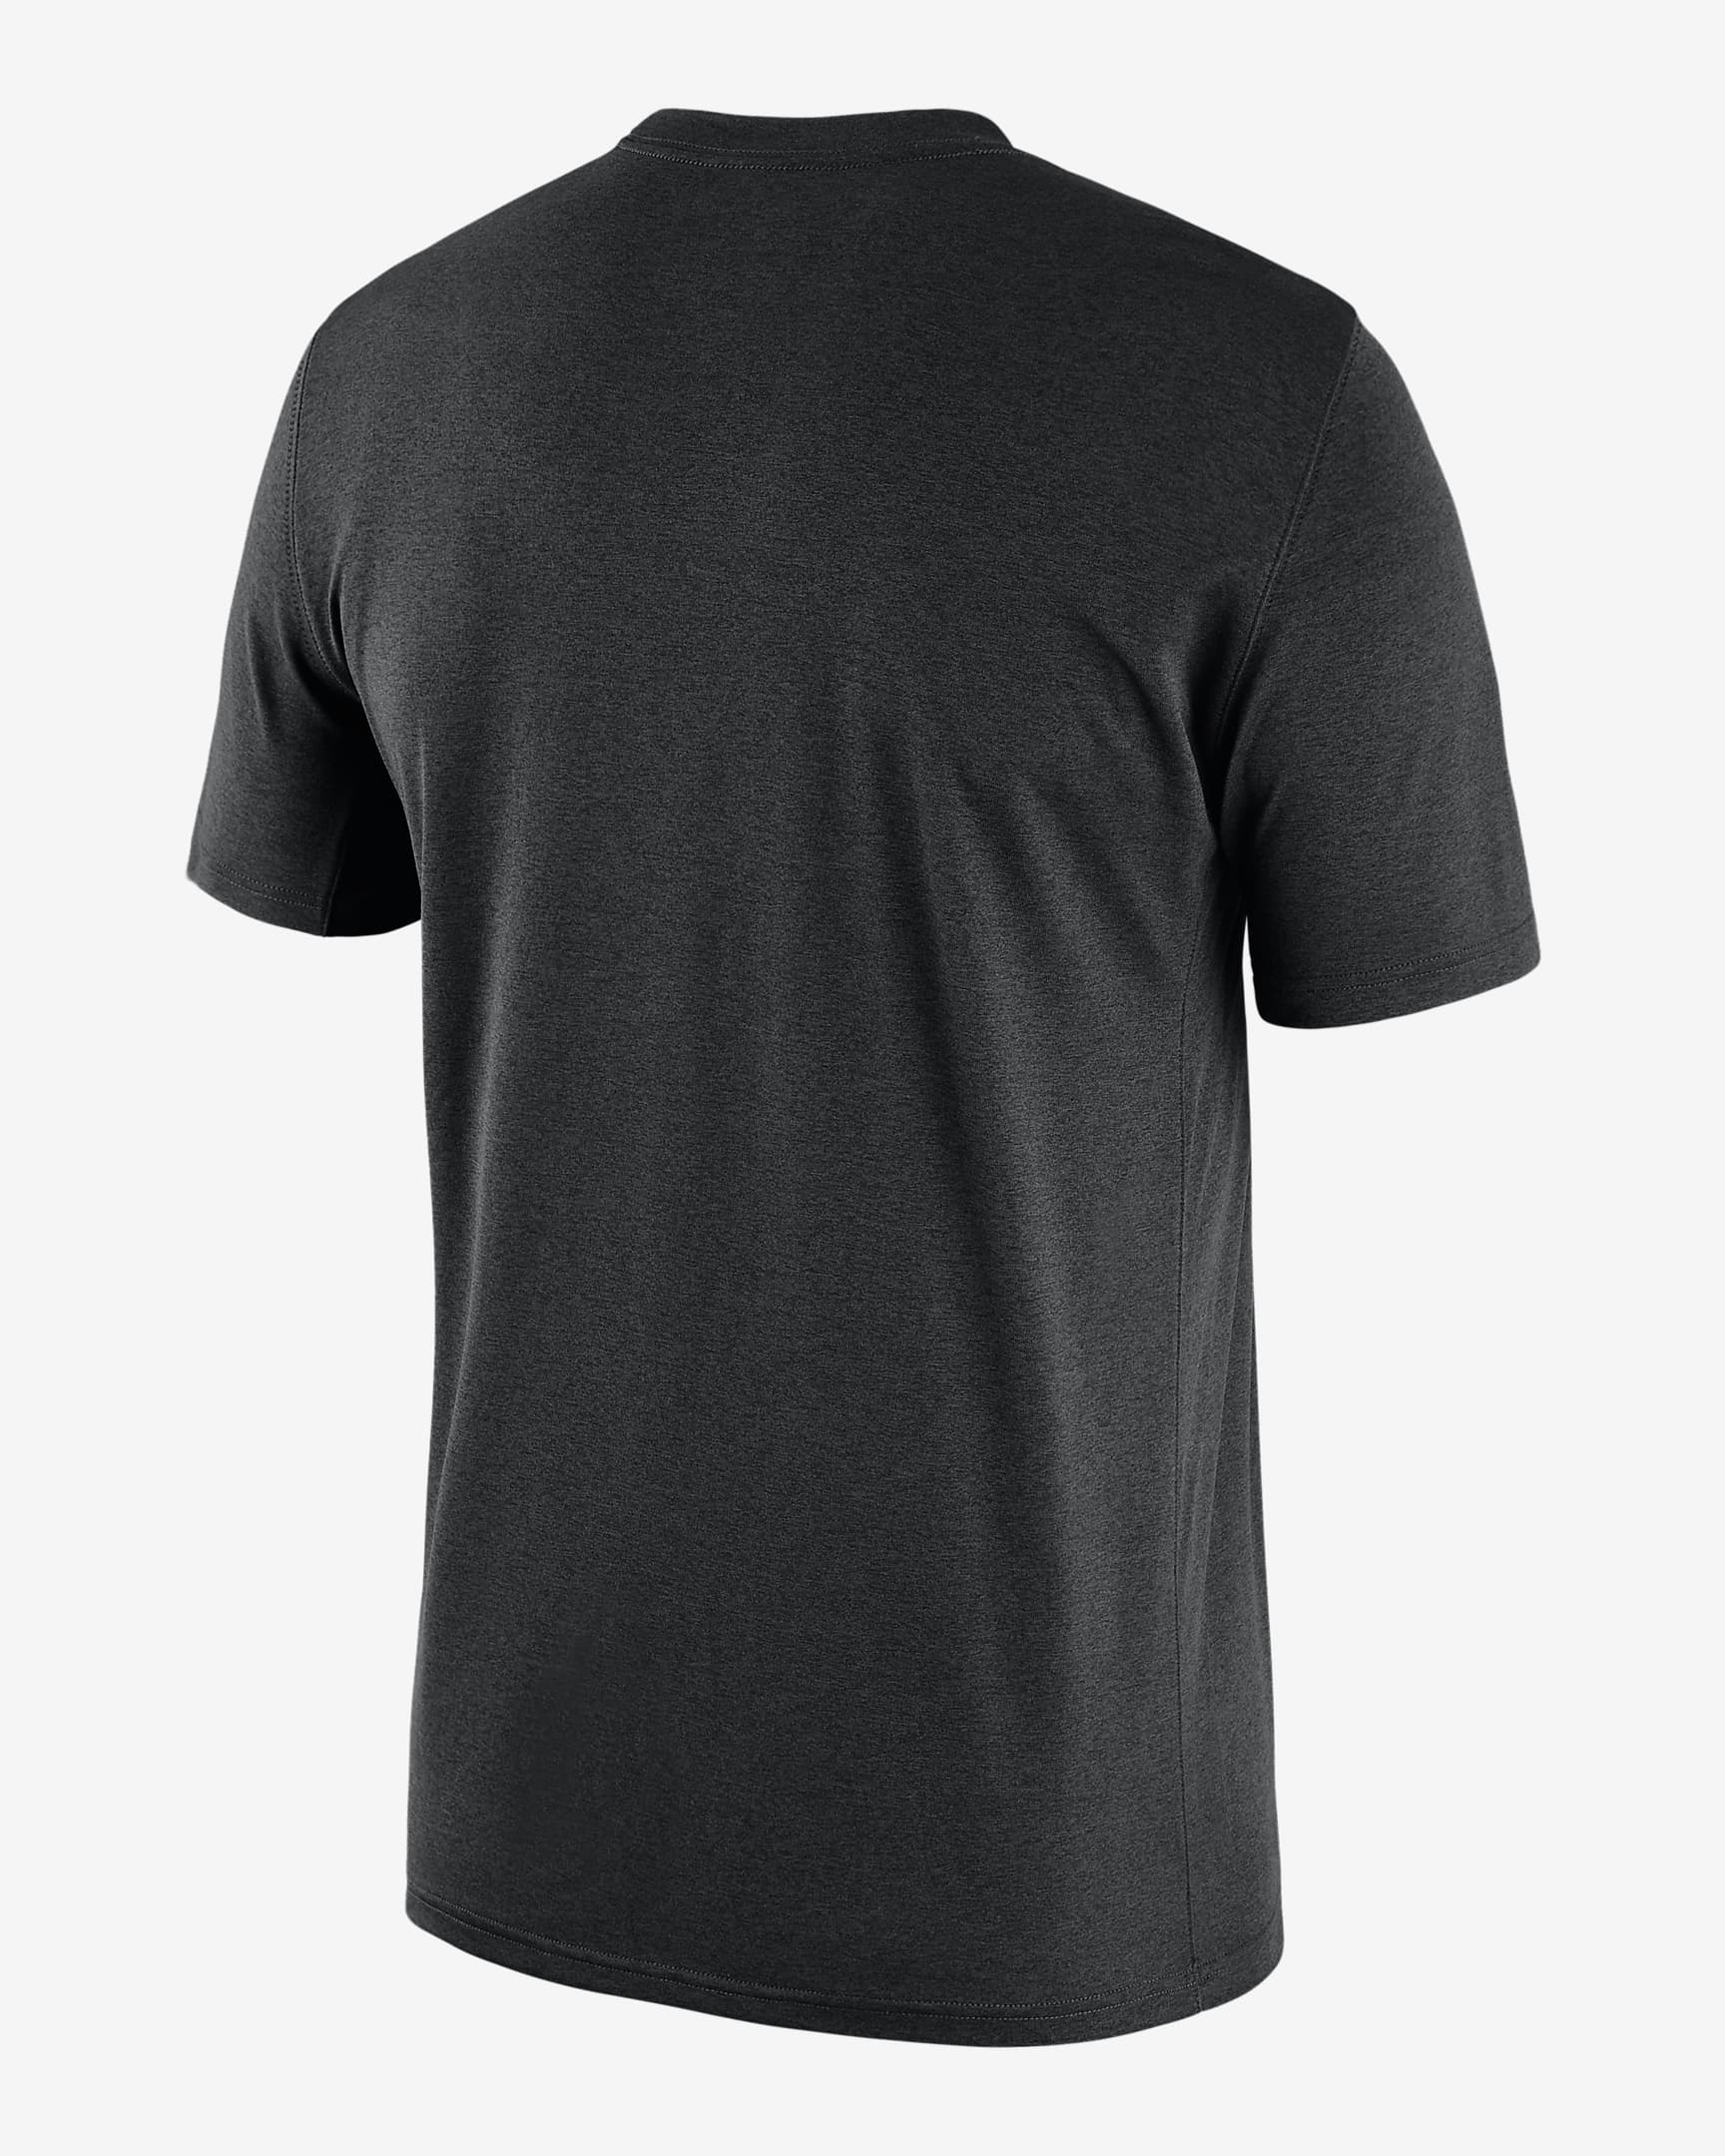 Utah Jazz Essential Men's Nike NBA T-Shirt. Nike.com